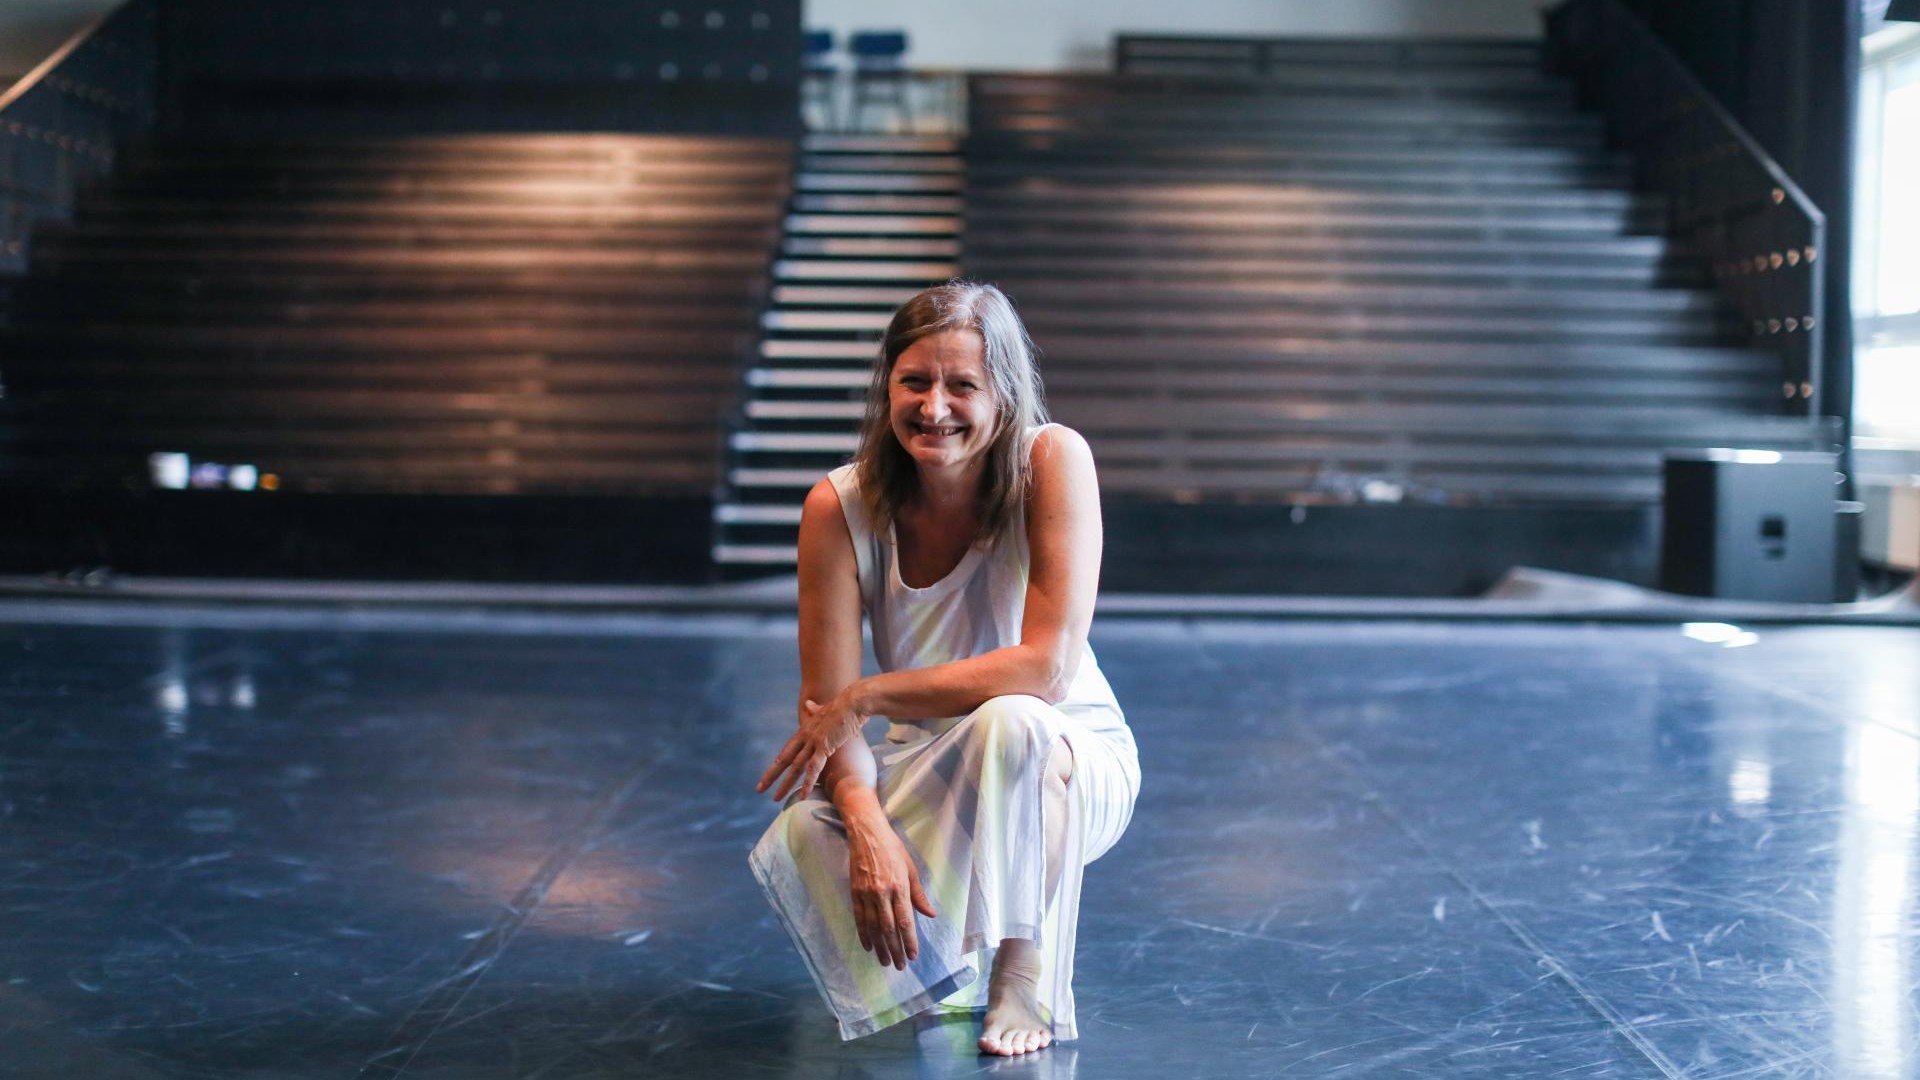 Maja Delak, Tänzerin und Choreografin: Erwachsen aus dem einzigartigen Geist von Gromka